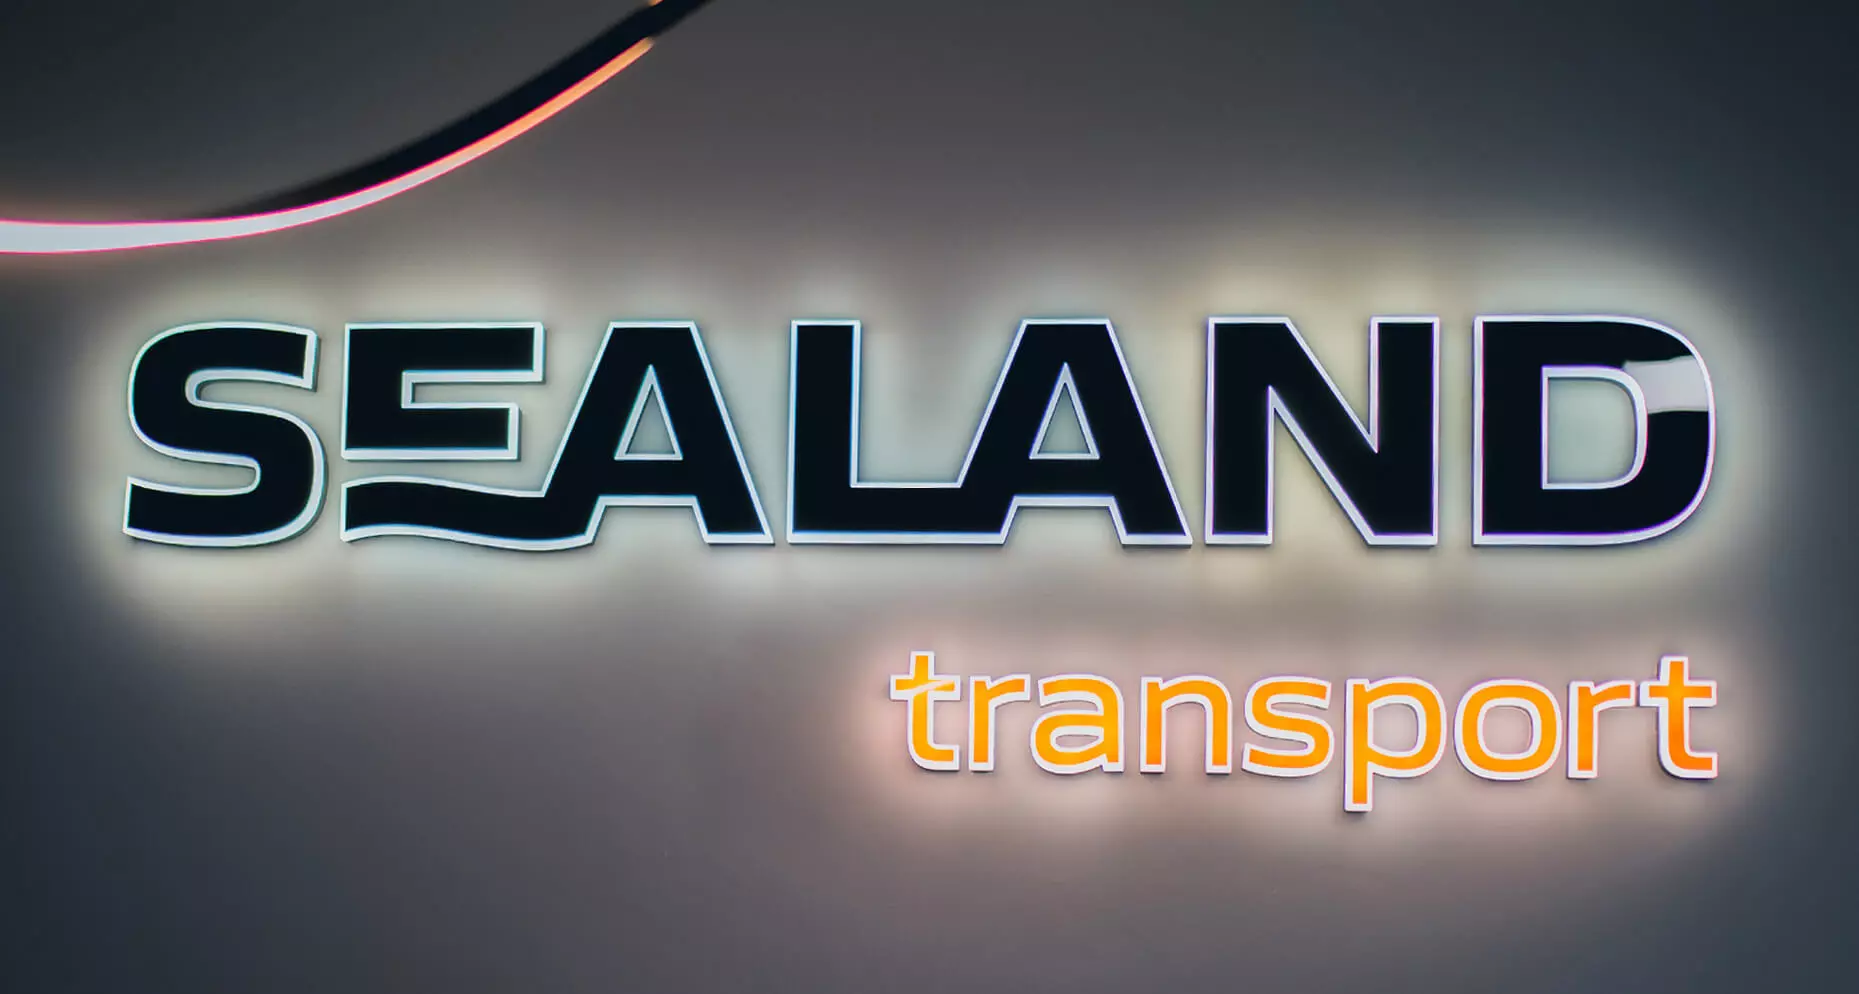 Sealand transport - litery świecące bokiem LED